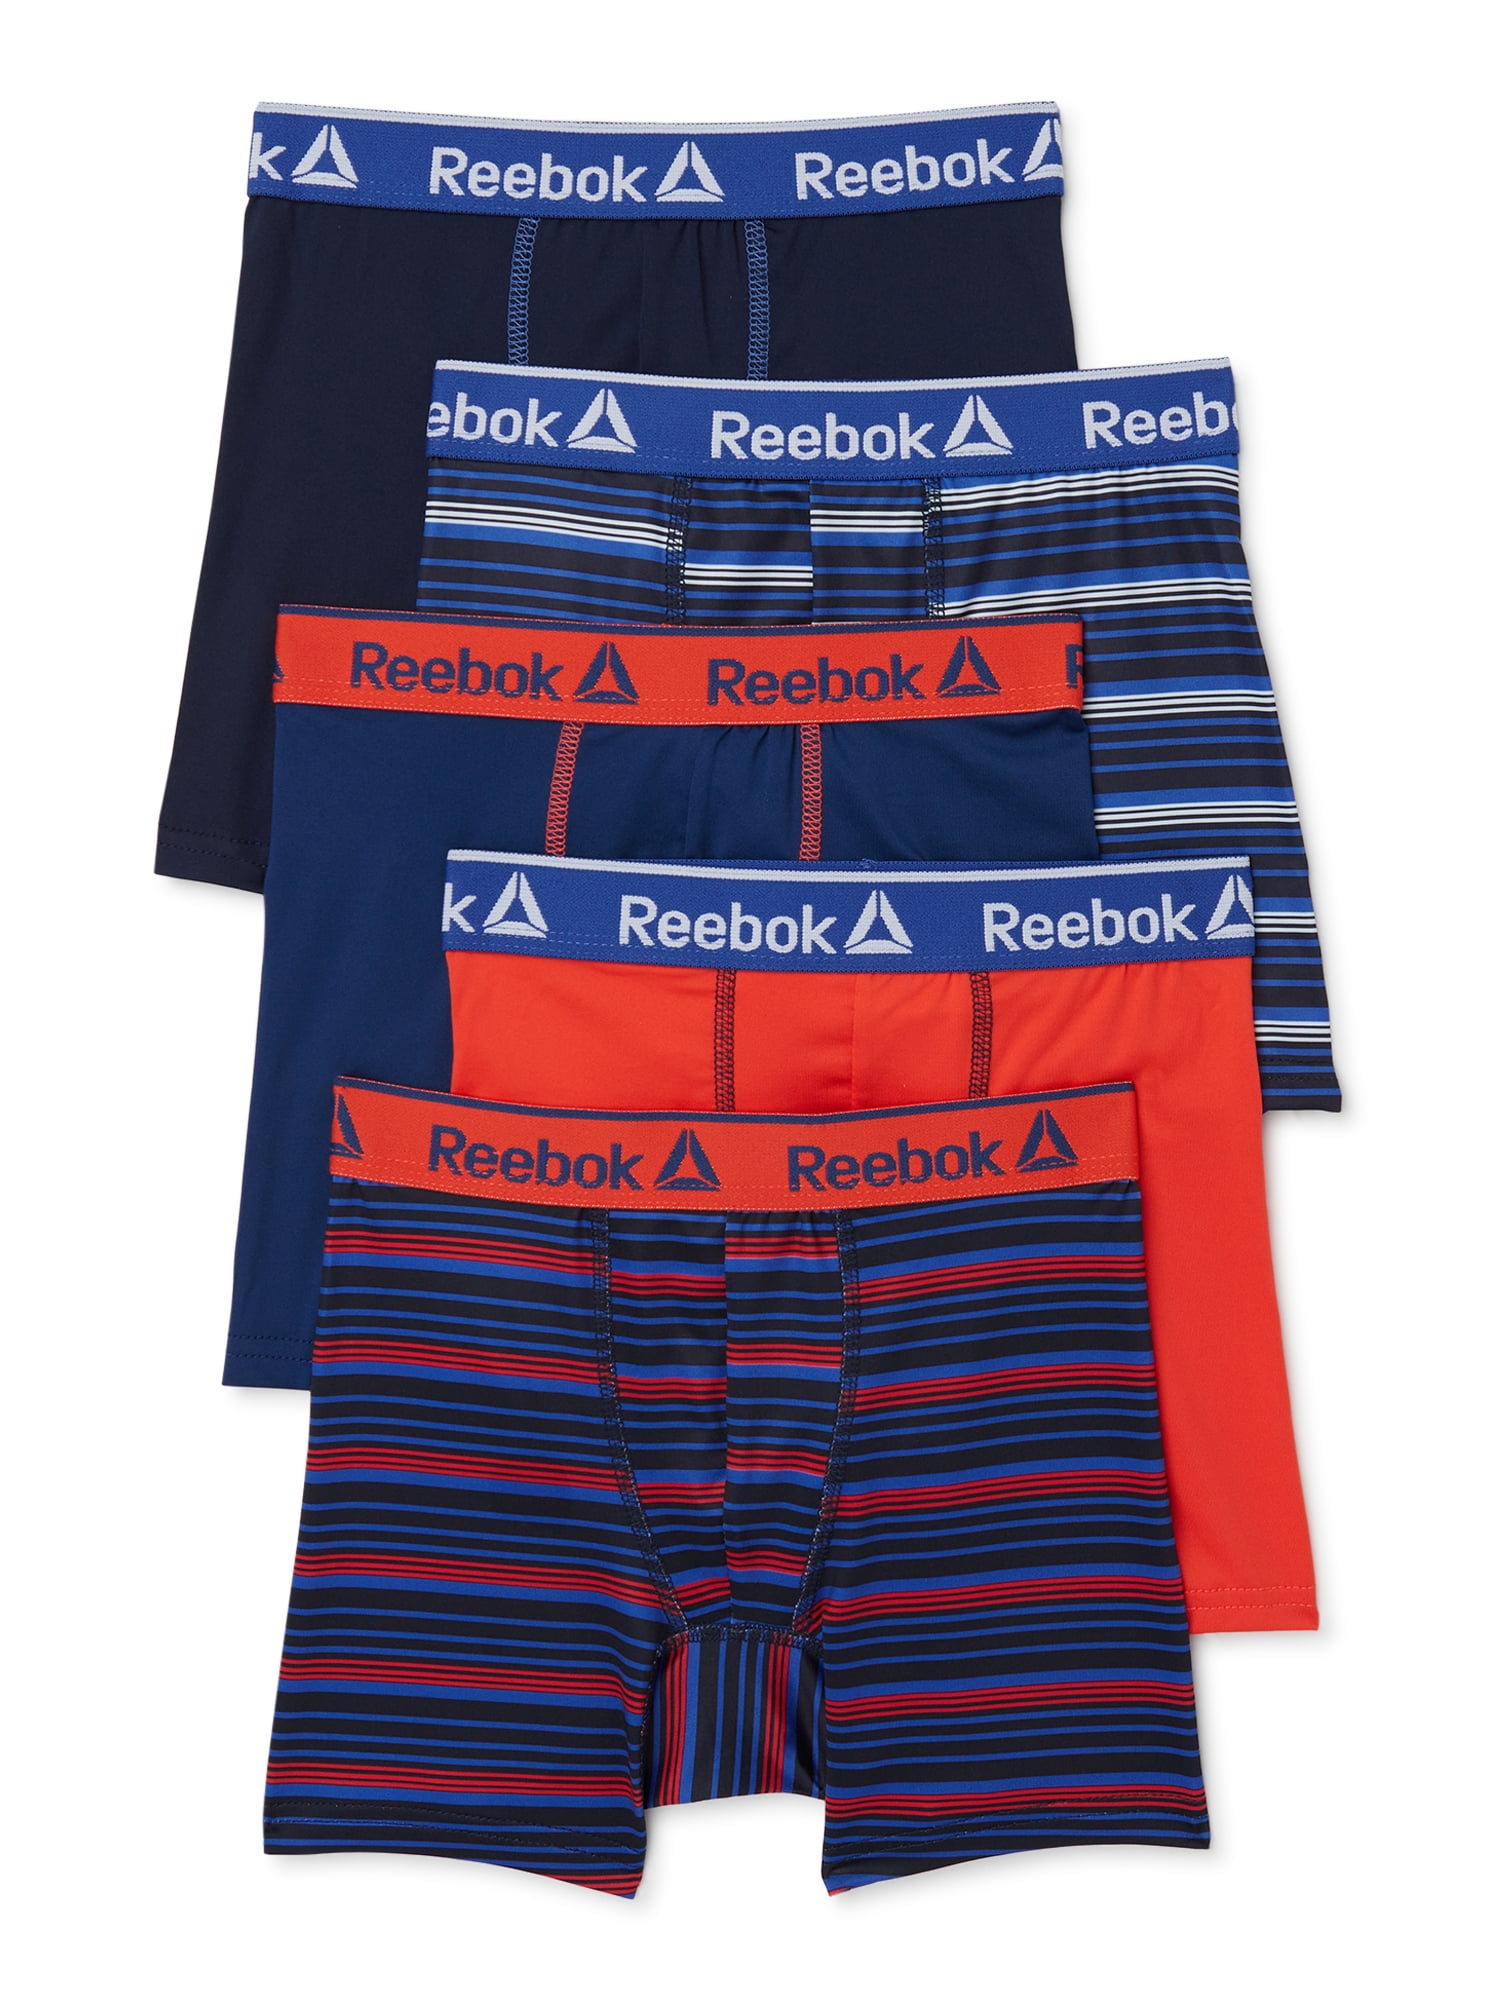 Reebok Boys Underwear Performance Boxer Briefs, 5-Pack - Walmart.com